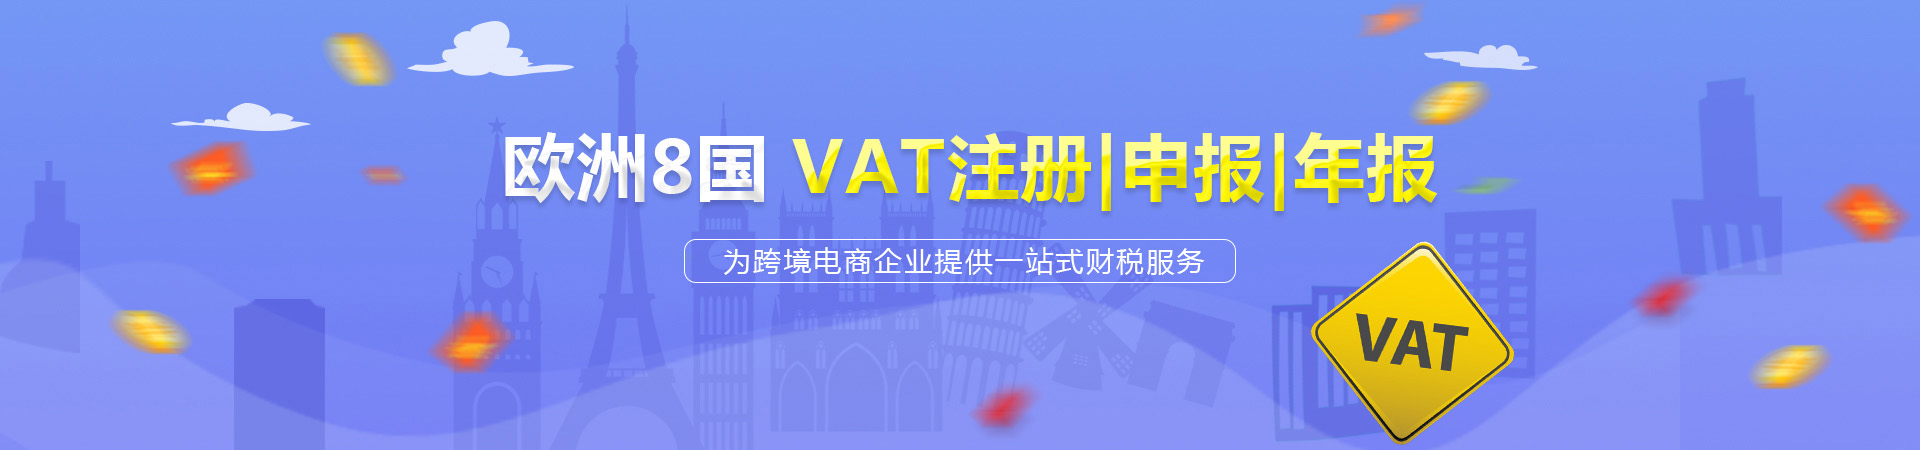 VAT注冊,英國VAT申報,深圳VAT注冊公司